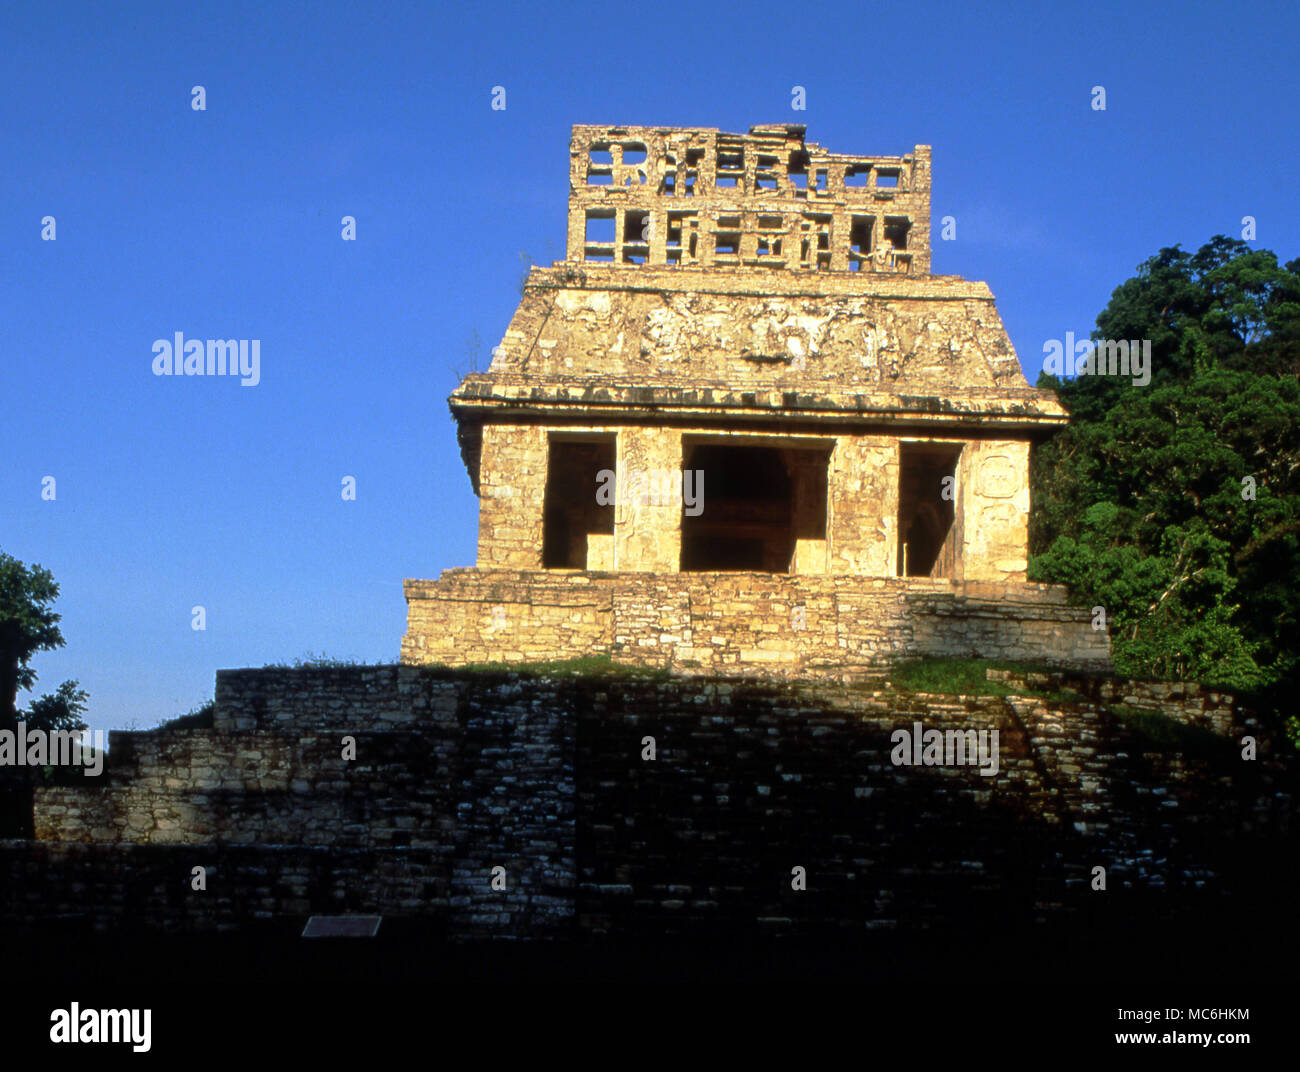 Arqueología mexicana. Palenque templo pirámide del sol con una cresta bien conservados. En la parte trasera hay un panel solar tallada en piedra caliza. Foto de stock